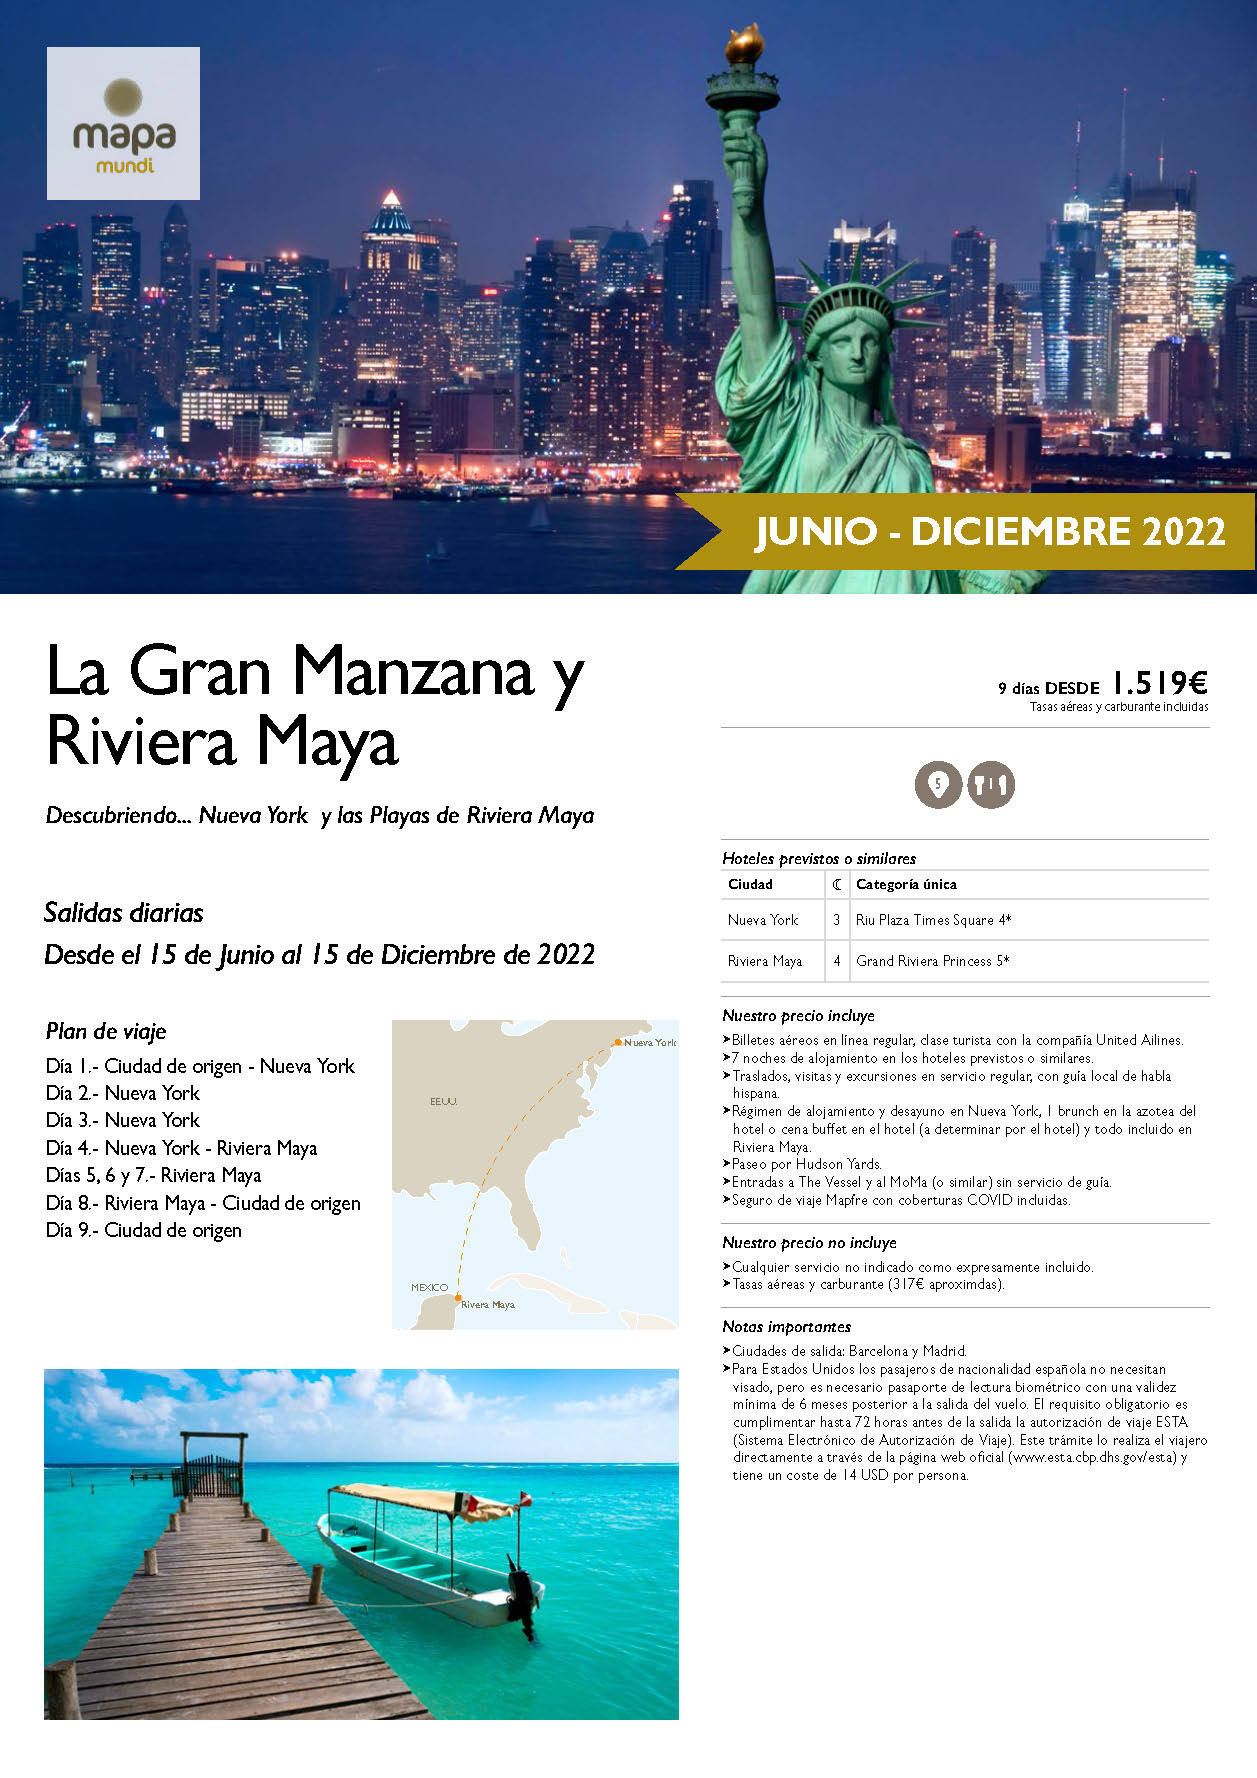 Oferta Mapa Mundi Combinado La Gran Manzana y Riviera Maya 9 dias salidas Mayo a Diciembre 2022 desde Madrid y Barcelona vuelos United Airlines